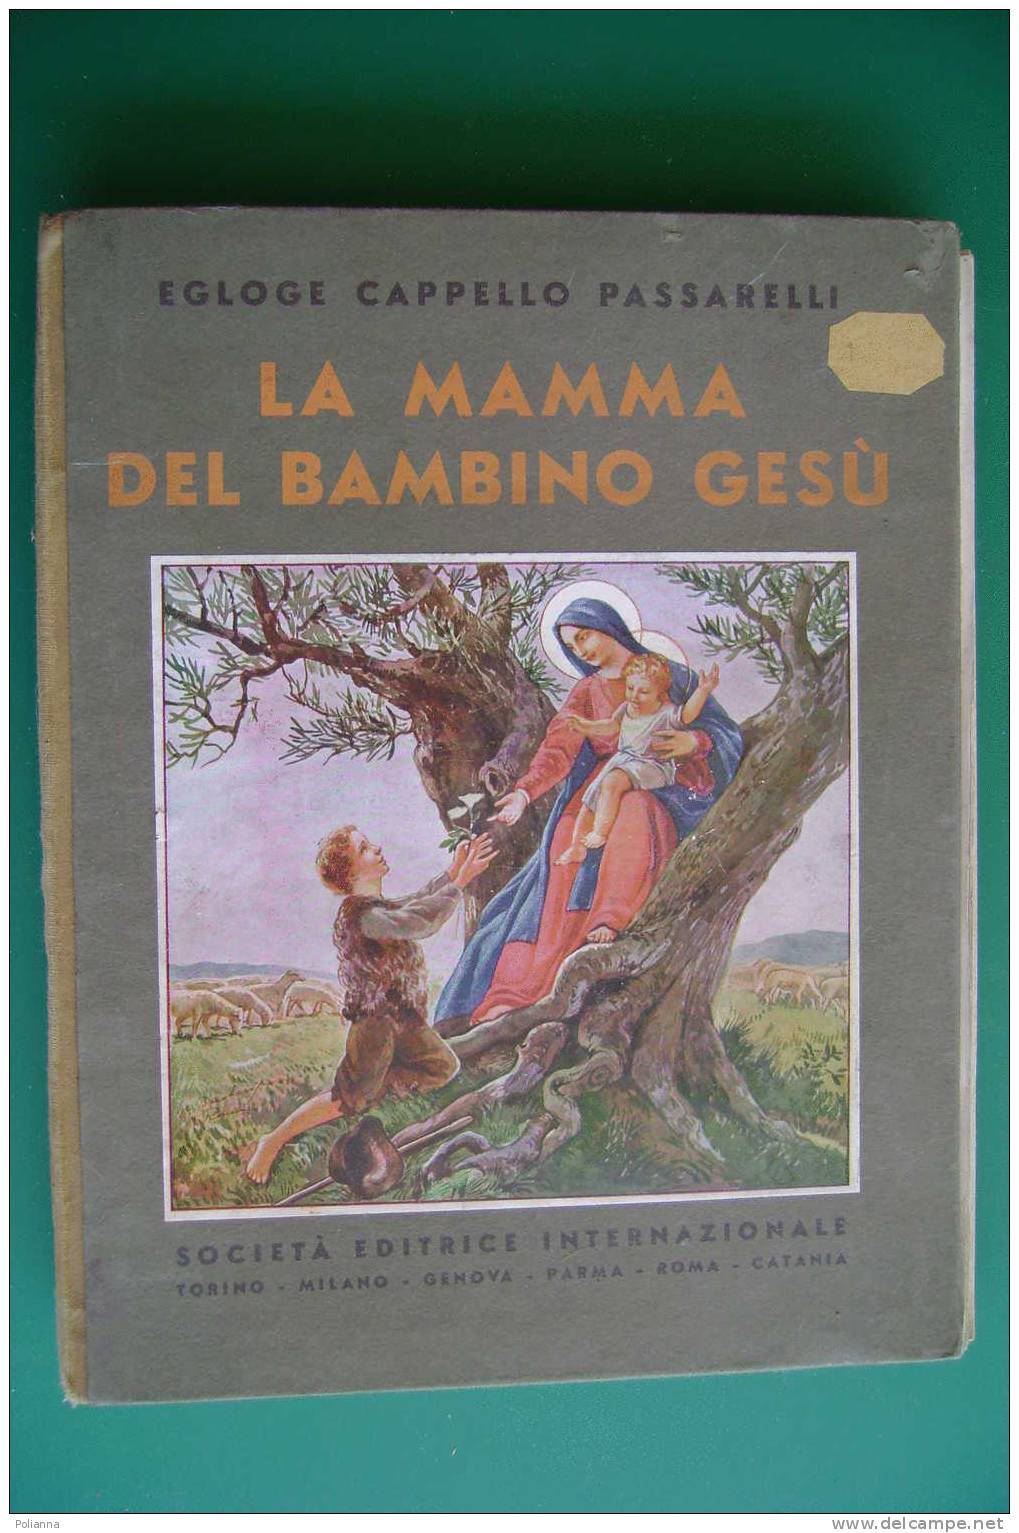 PDD/67 Egloge Cappello Passarelli LA MAMMA DEL BAMBINO GESU' S.E.I. 1932 - Religione